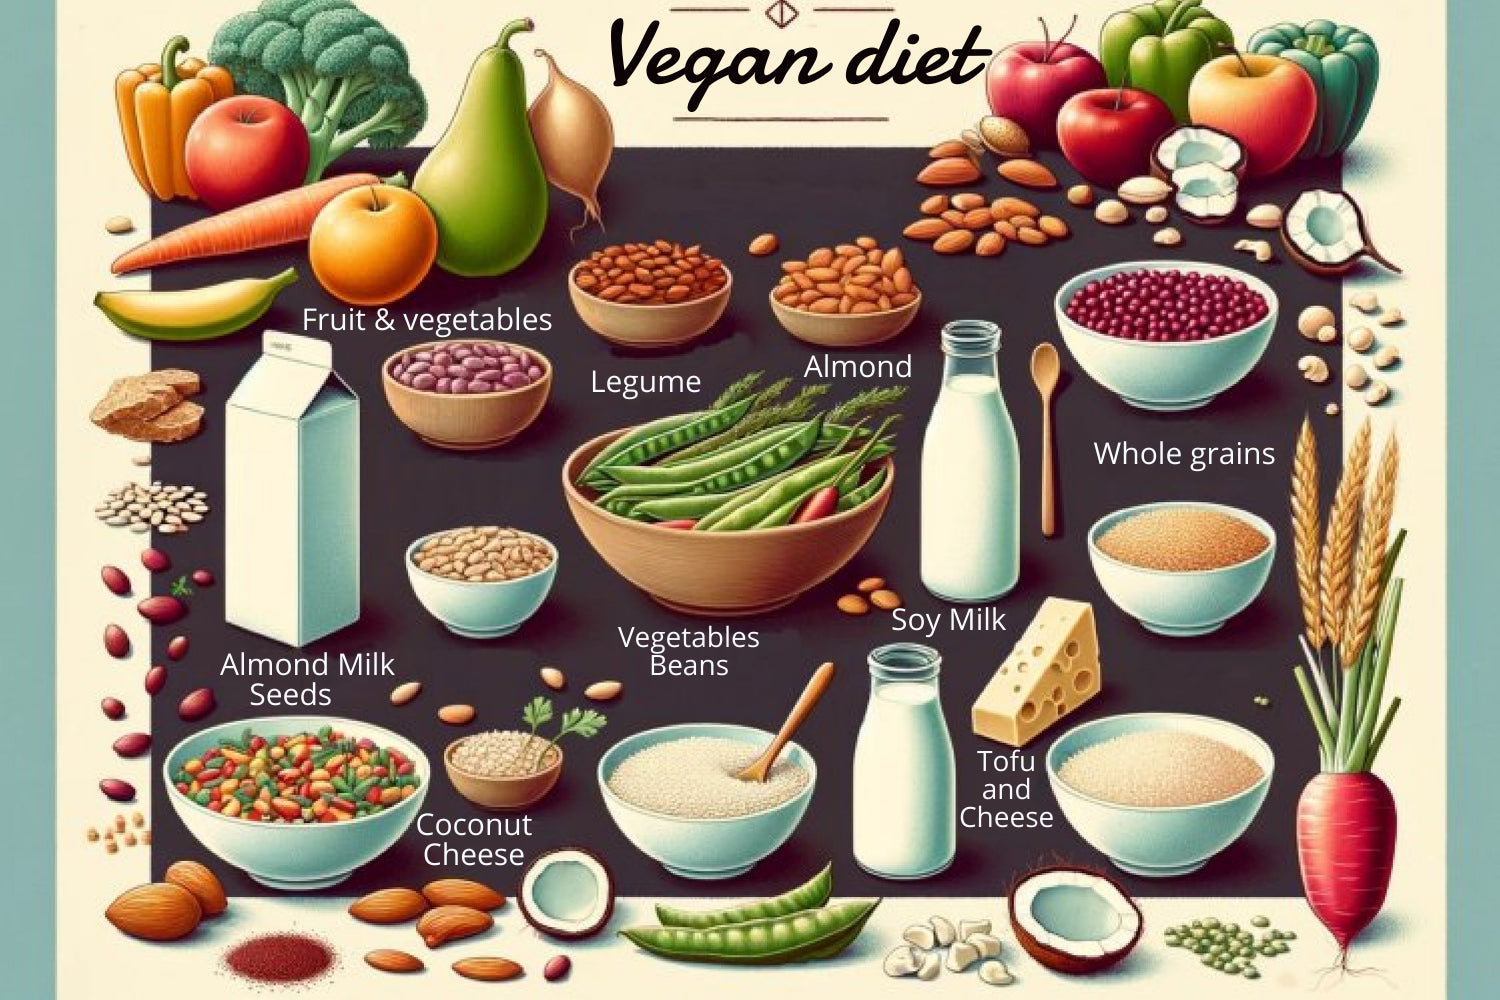 Vegan diet: Health benefits, foods, and tips